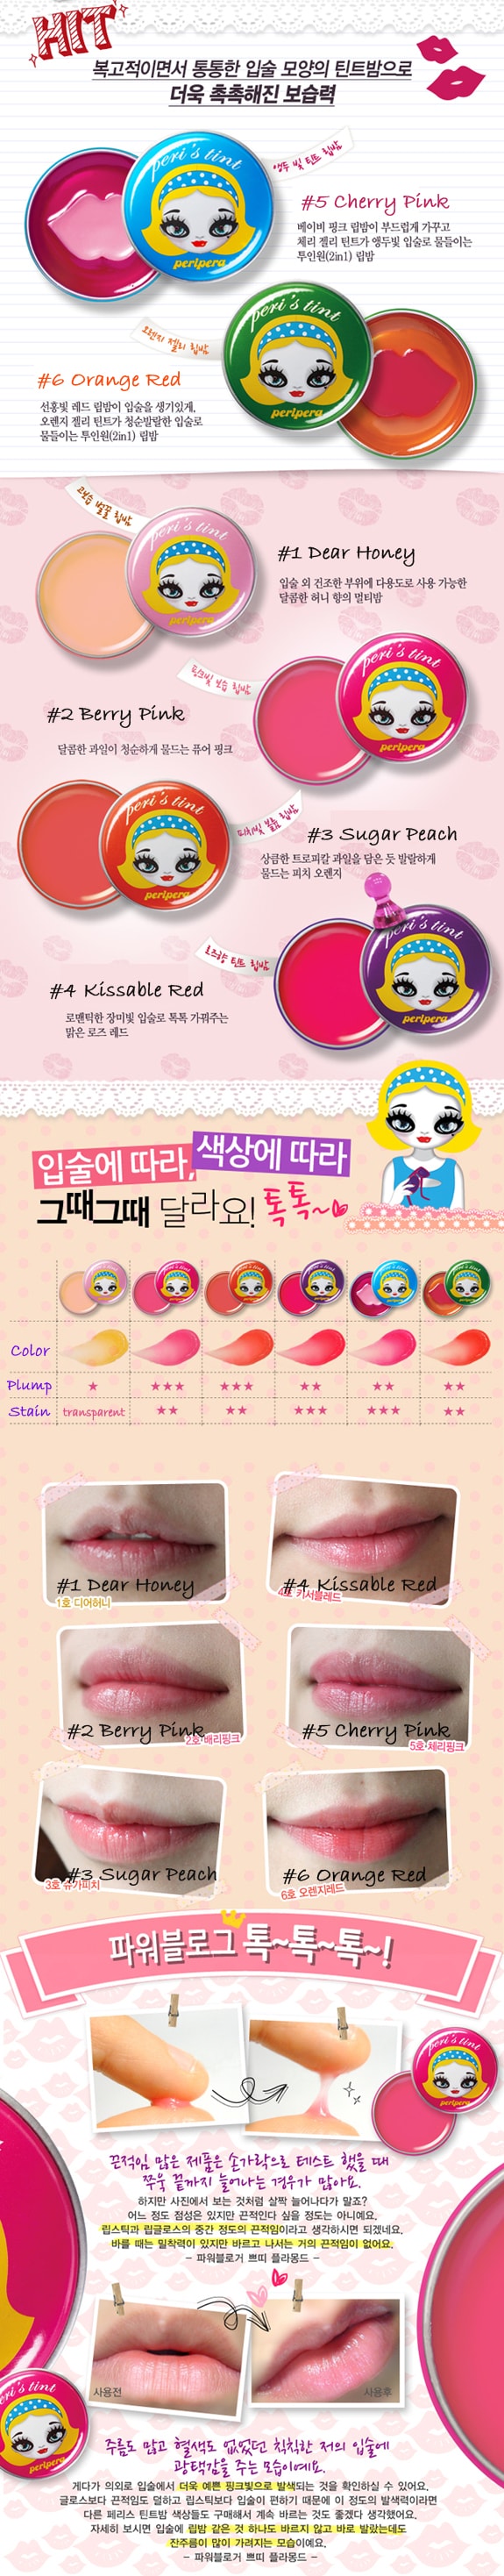 韩国 PERIPERA Peri's tint 润唇膏 #03 Sugar Peach 1pc